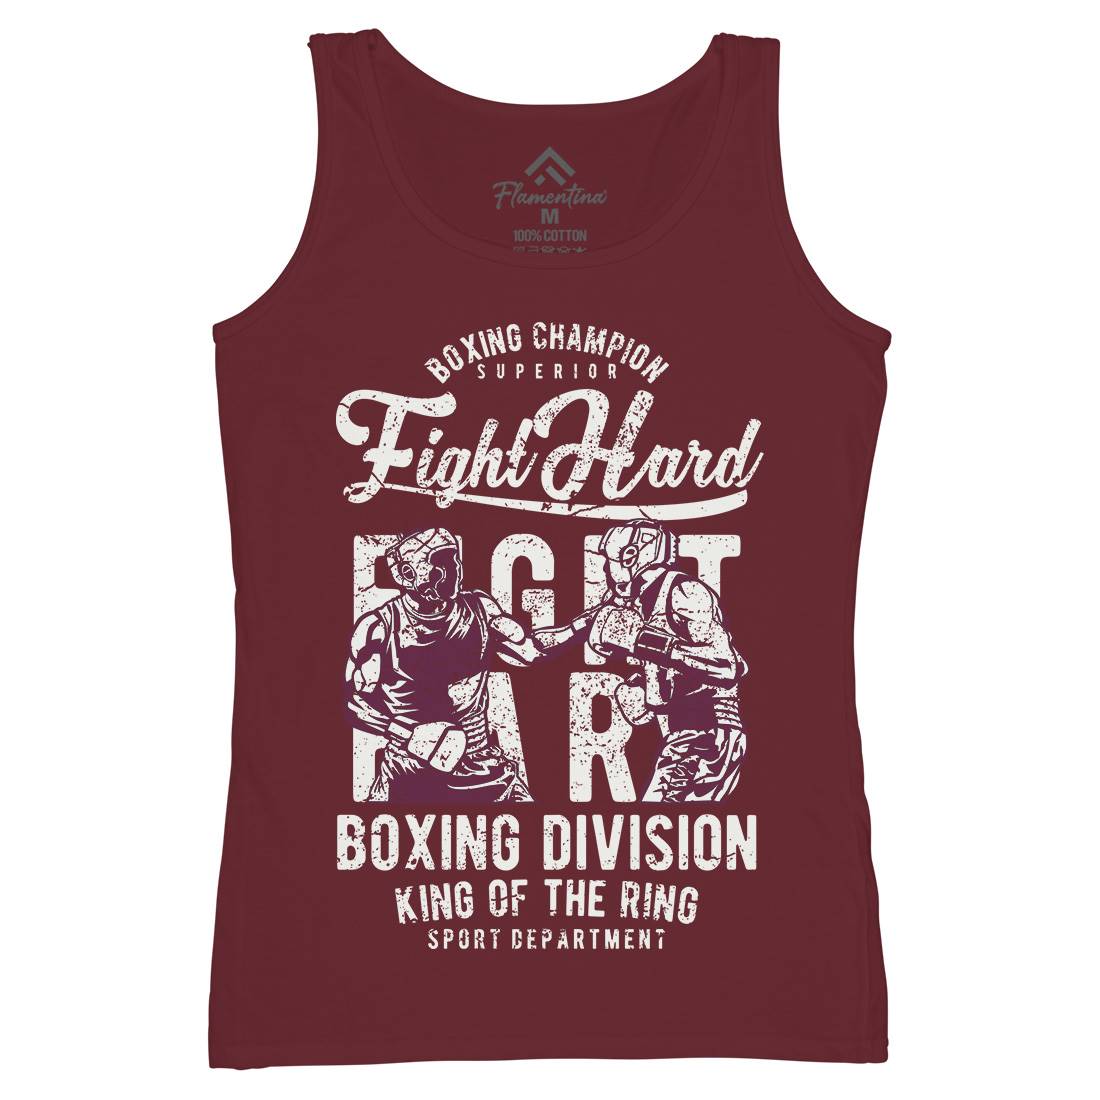 Fight Hard Womens Organic Tank Top Vest Sport A653